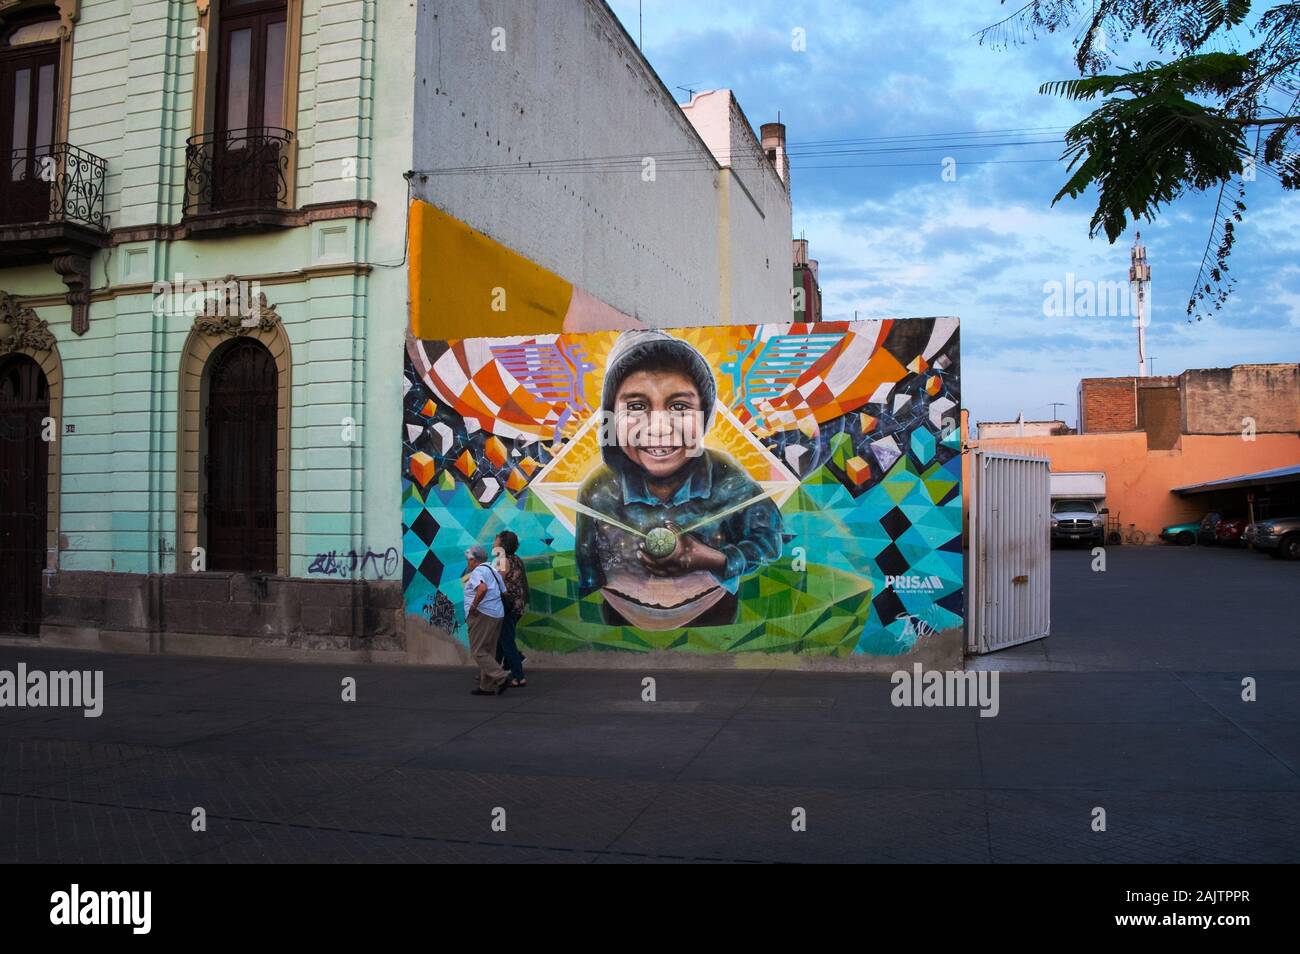 Colorful mural in Guadalajara, Mexico Stock Photo